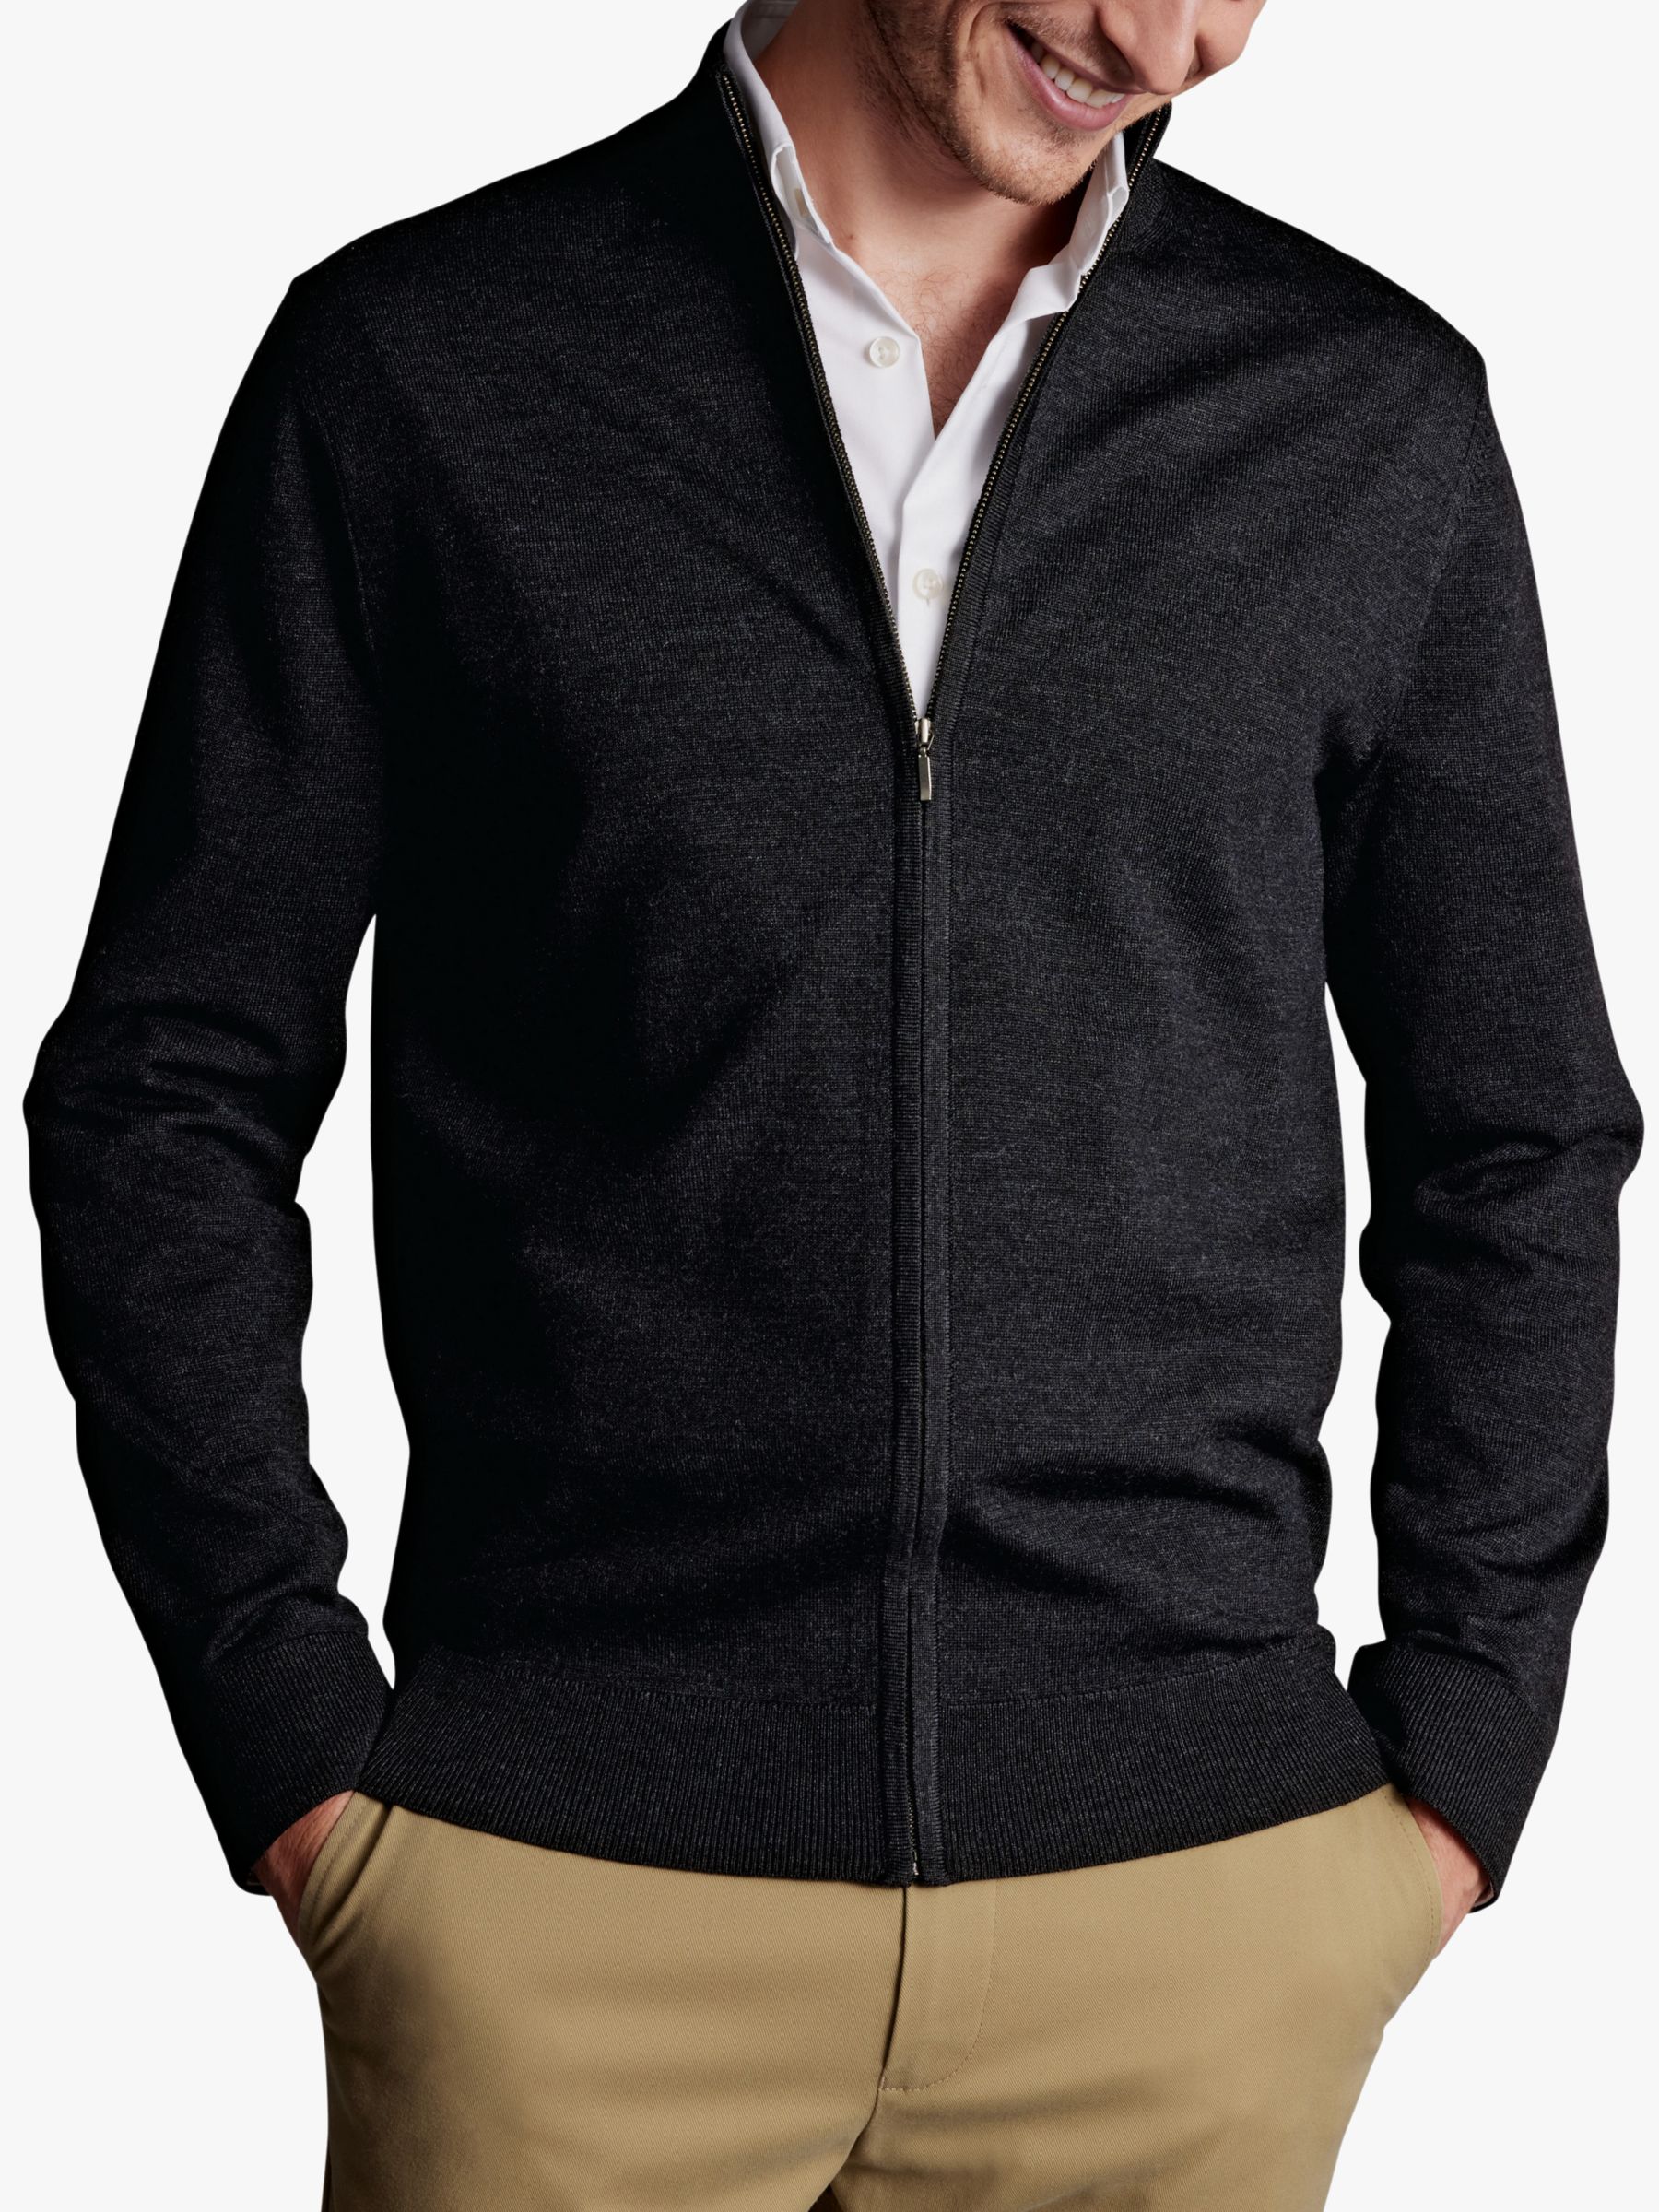 Heavy Wool Sweaters For Men | John Lewis & Partners